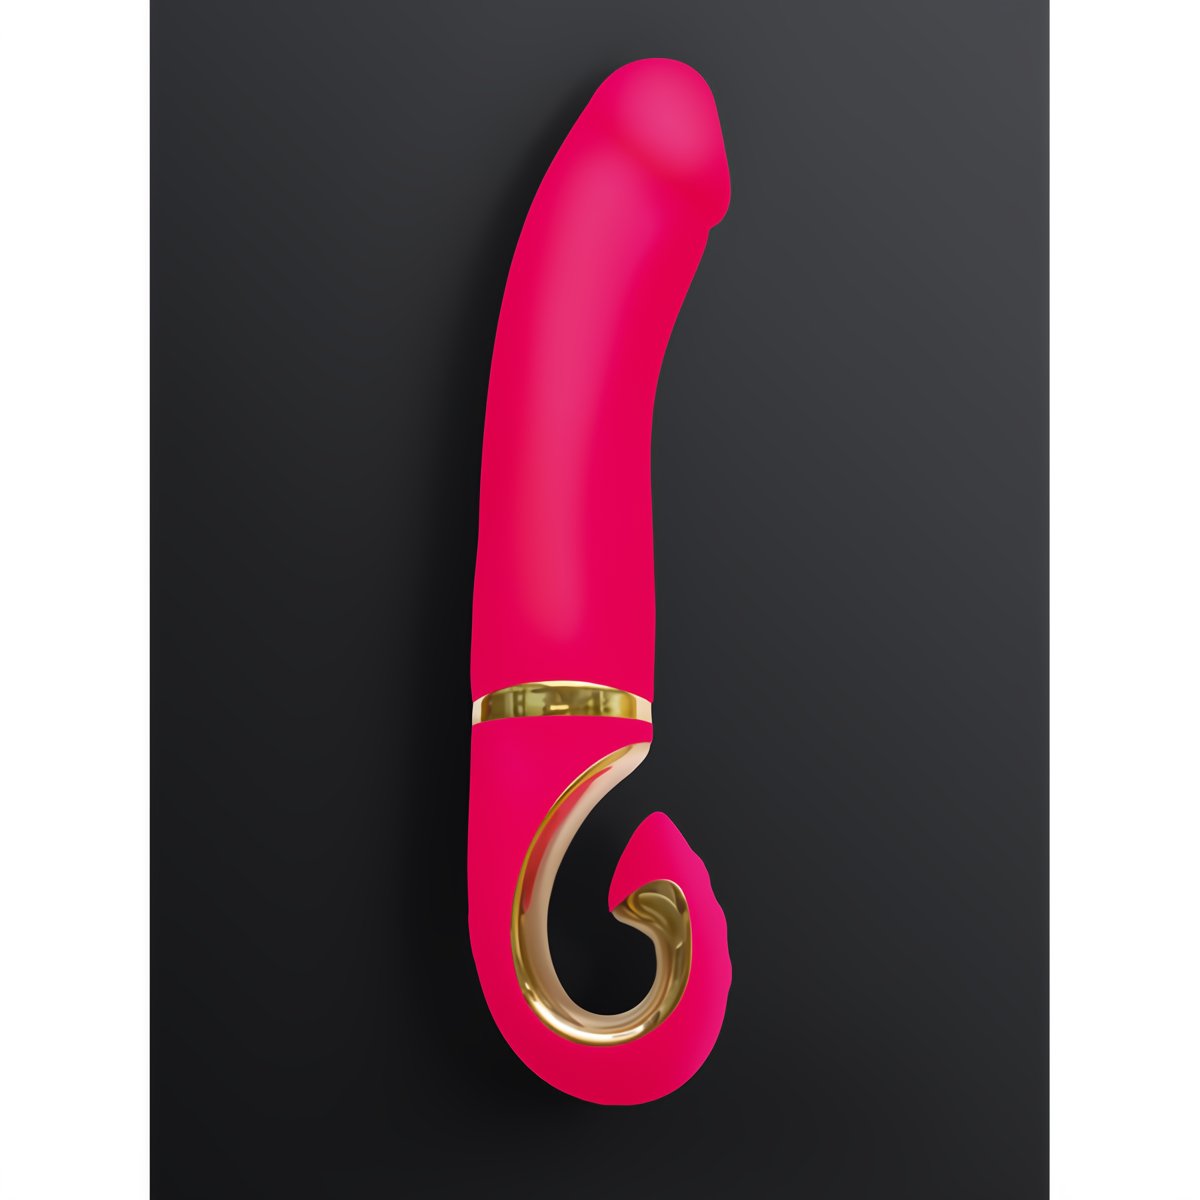 G - Jay - Pink - EroticToyzProducten,Toys,Vibrators,G - Spot Vibrator,,VrouwelijkG - Vibe